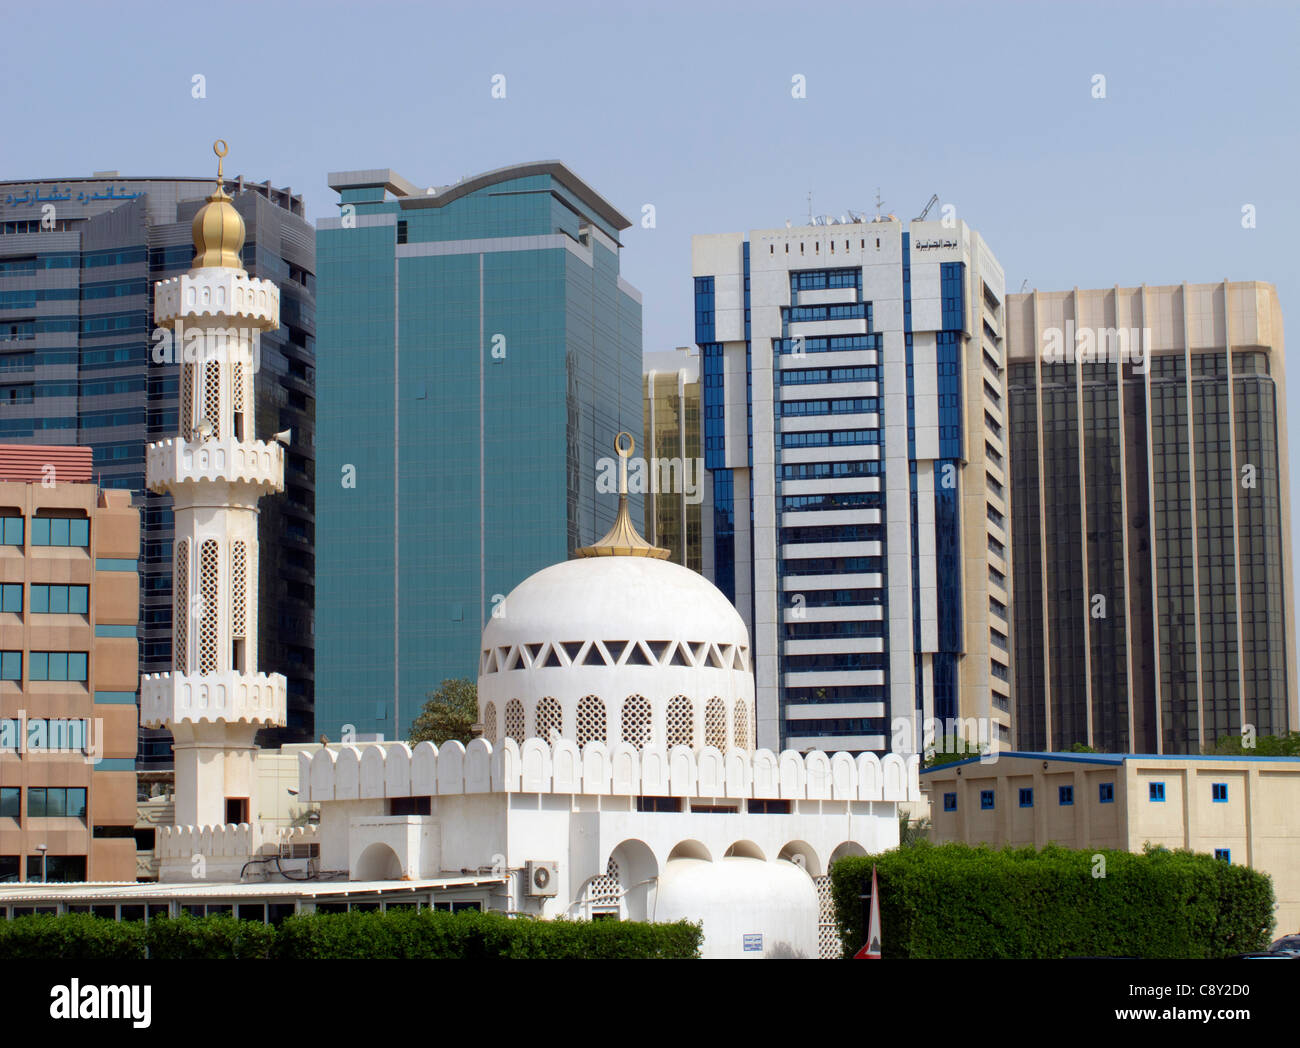 Contraste entre mosquée et de nouveaux immeubles de bureaux dans le centre de Abu Dhabi Emirats Arabes Unis ÉMIRATS ARABES UNIS Banque D'Images